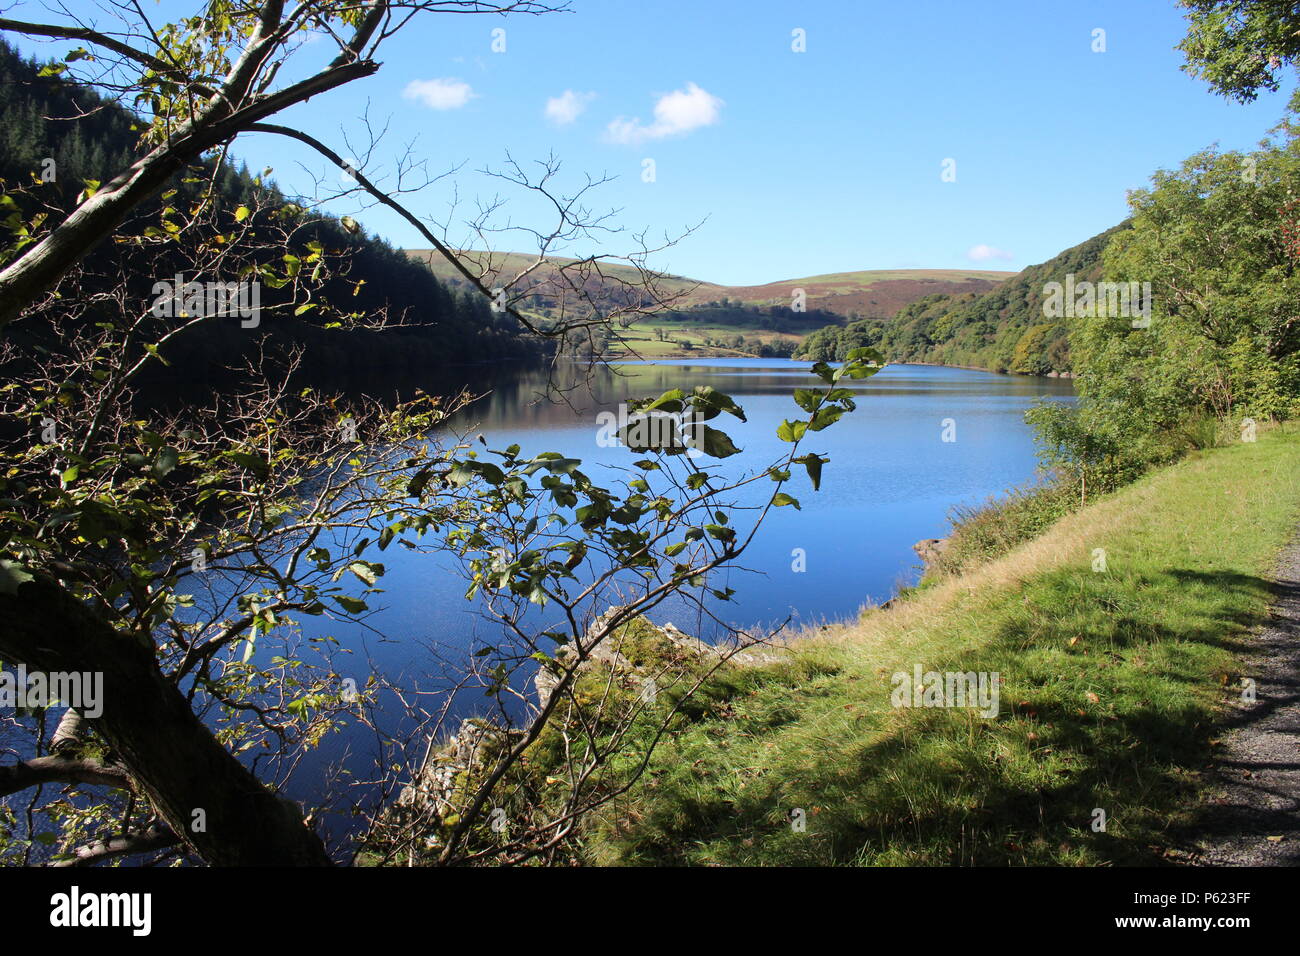 sunny early autumn day Garreg Ddu reservoir, Elan Valley, Powys, Wales, UK Stock Photo